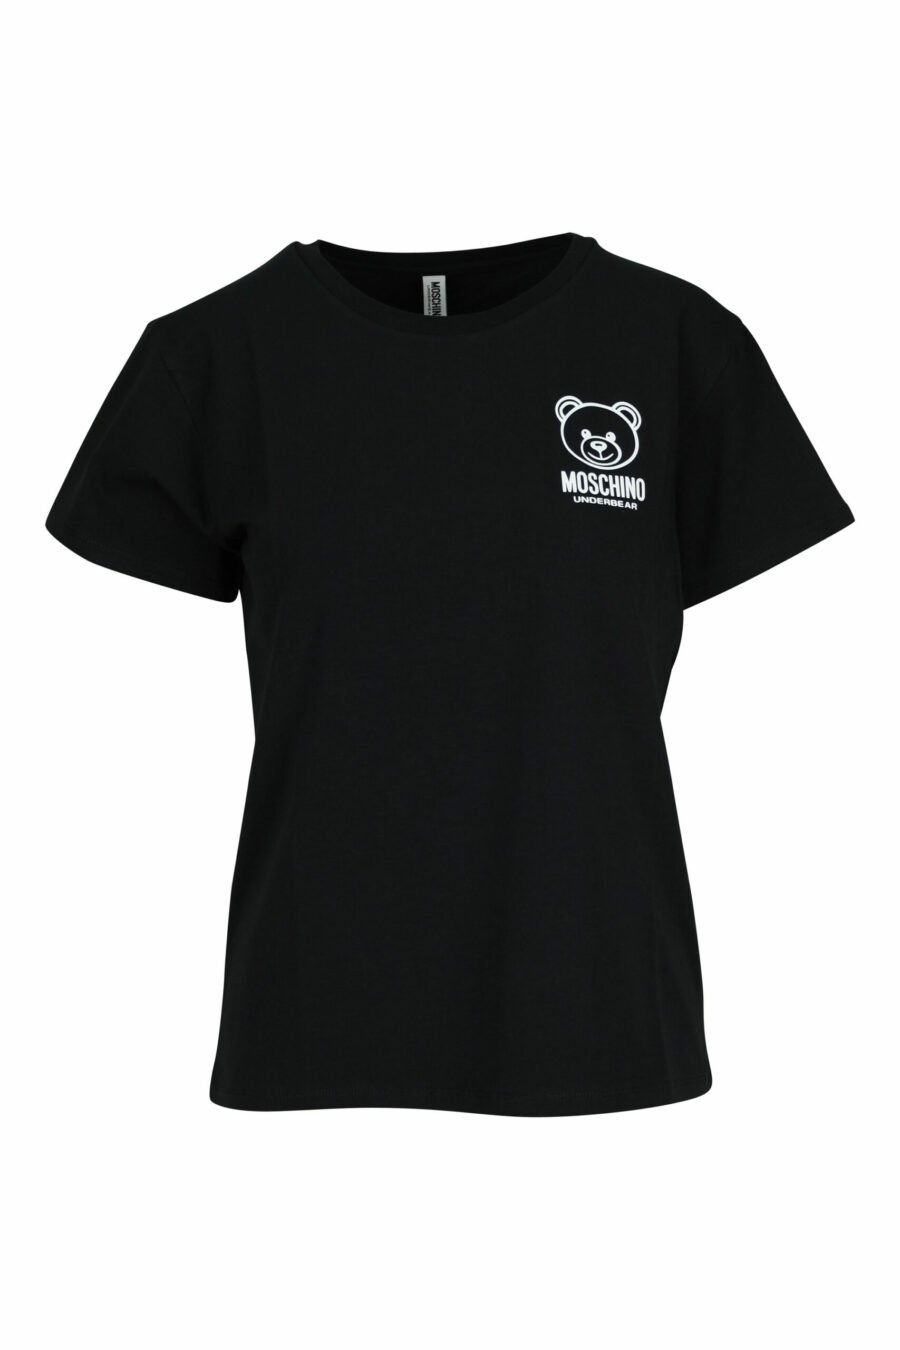 Camiseta negra con minilogo oso blanco - 667113355306 scaled